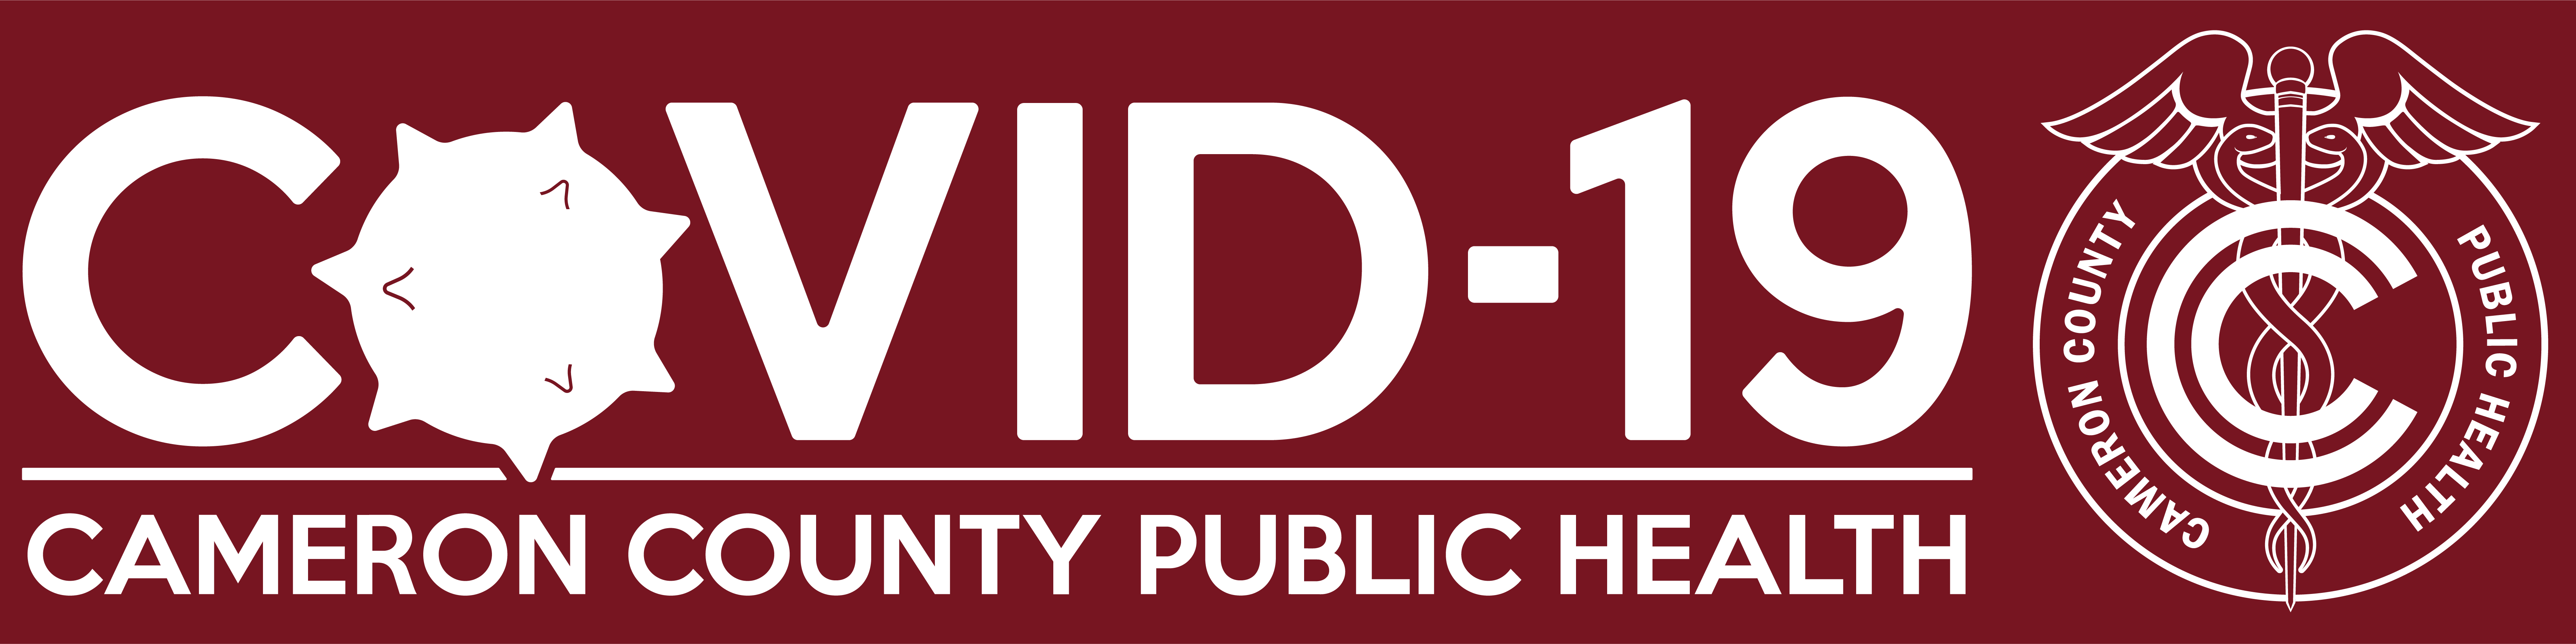 LA County Daily COVID-19 Data - LA County Department of Public Health